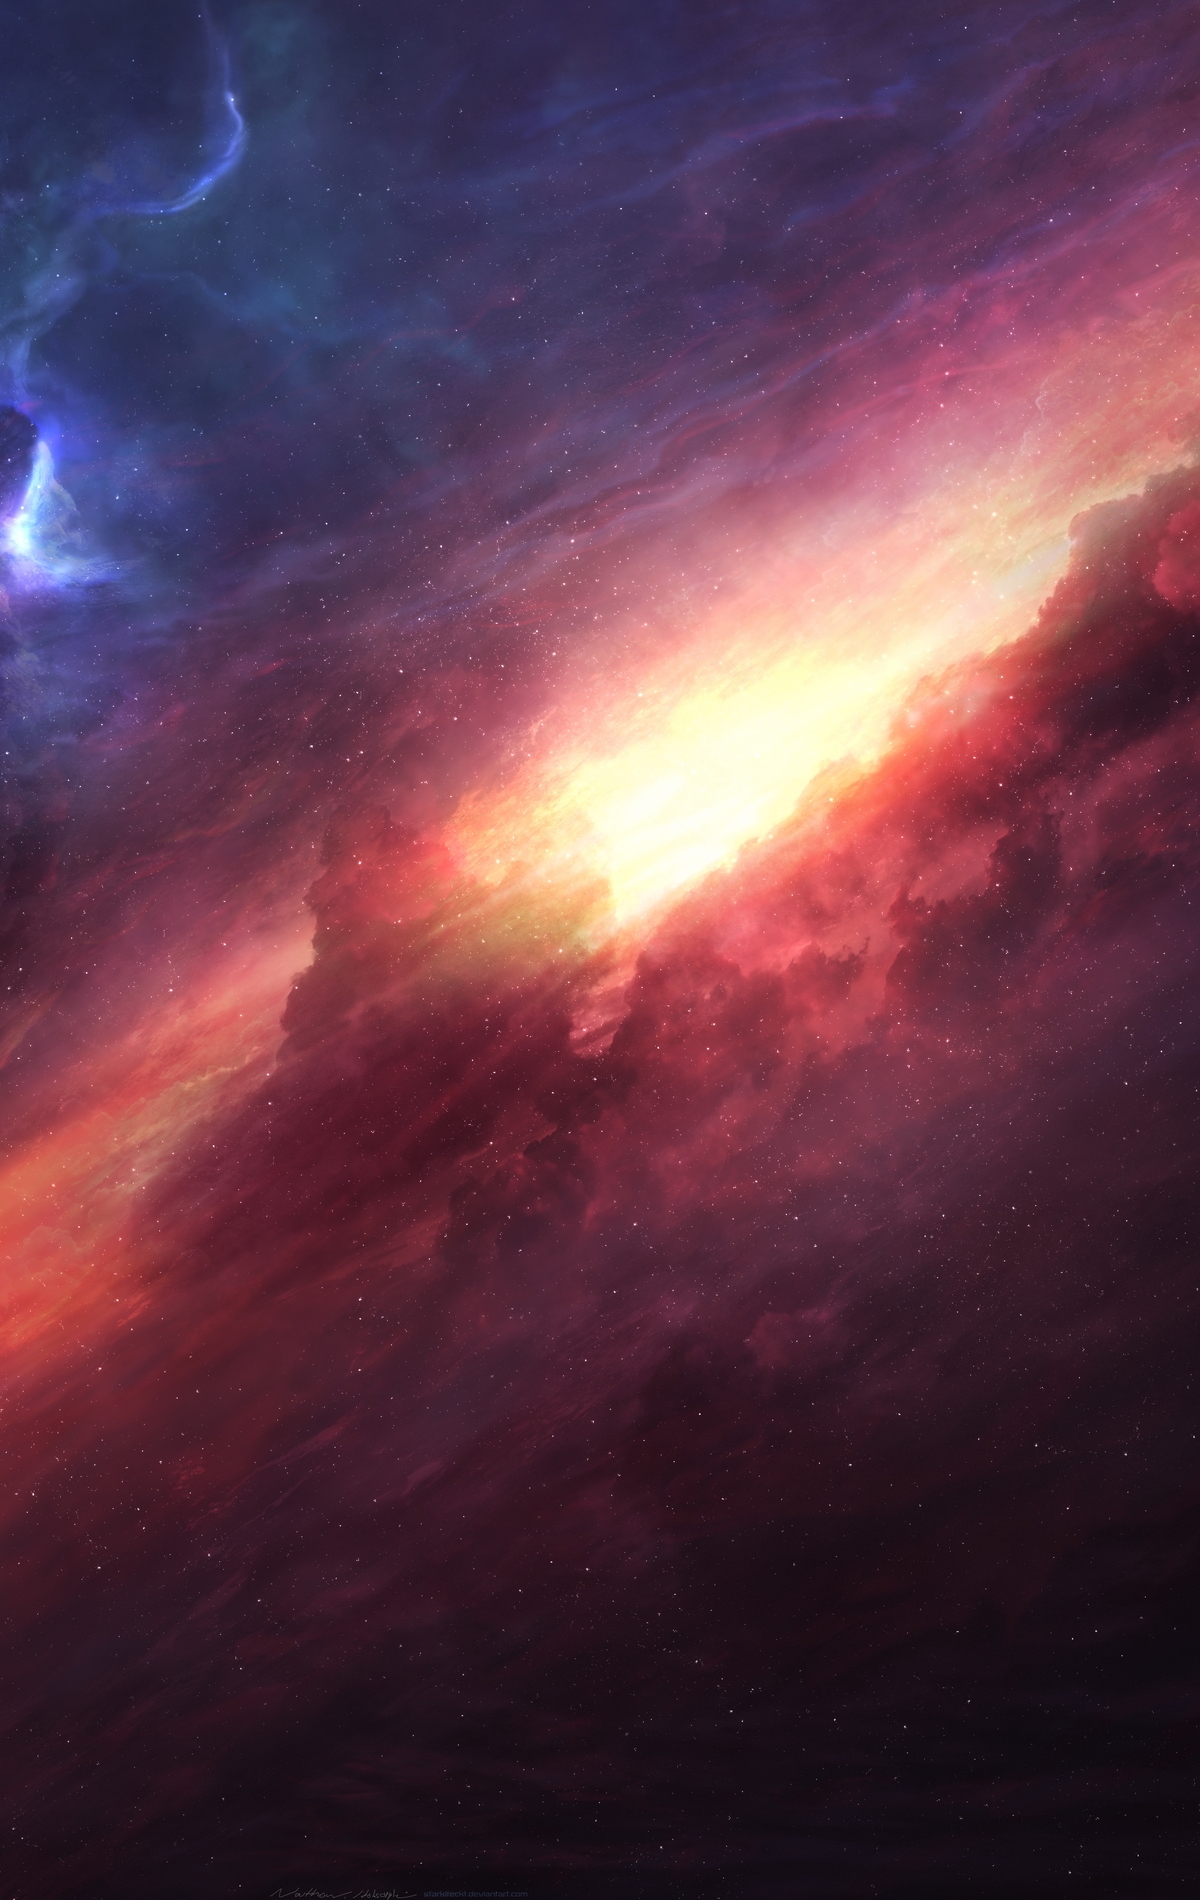 Картинка: Космос, газ, свет, молекулярное, облако, зарождение, формирование